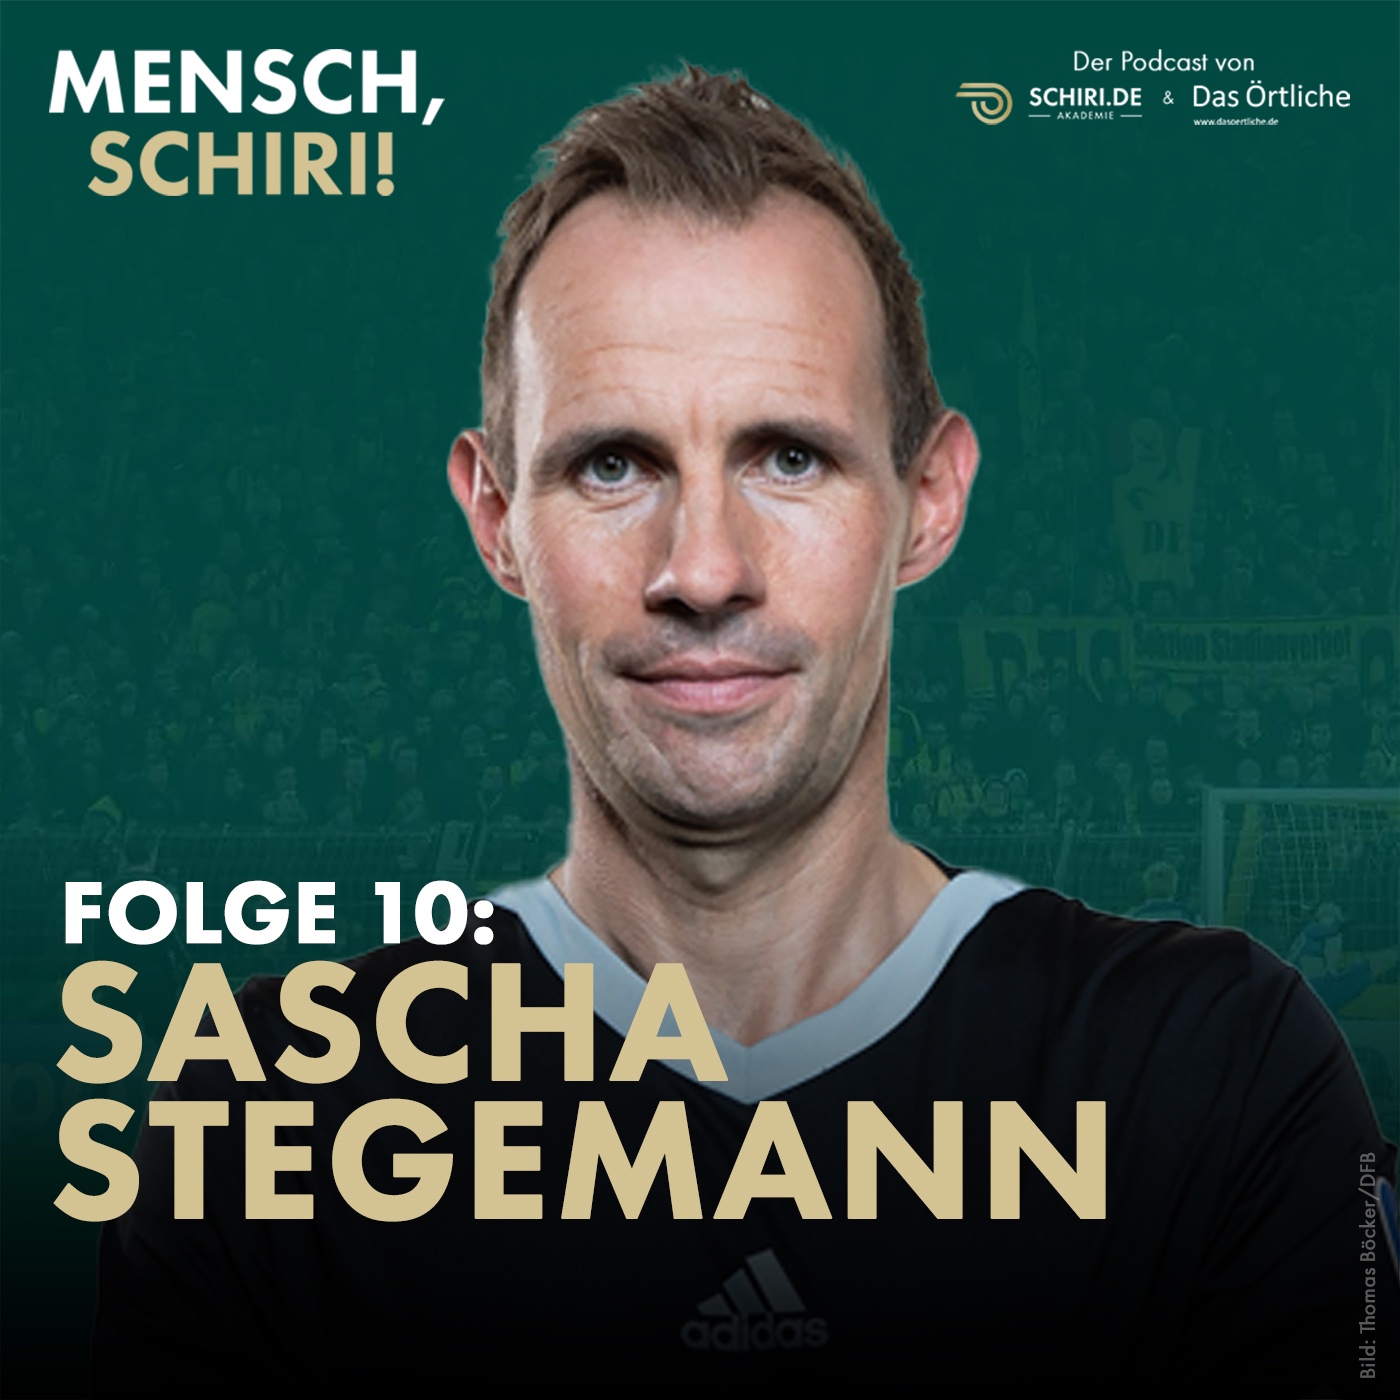 Sascha Stegemann